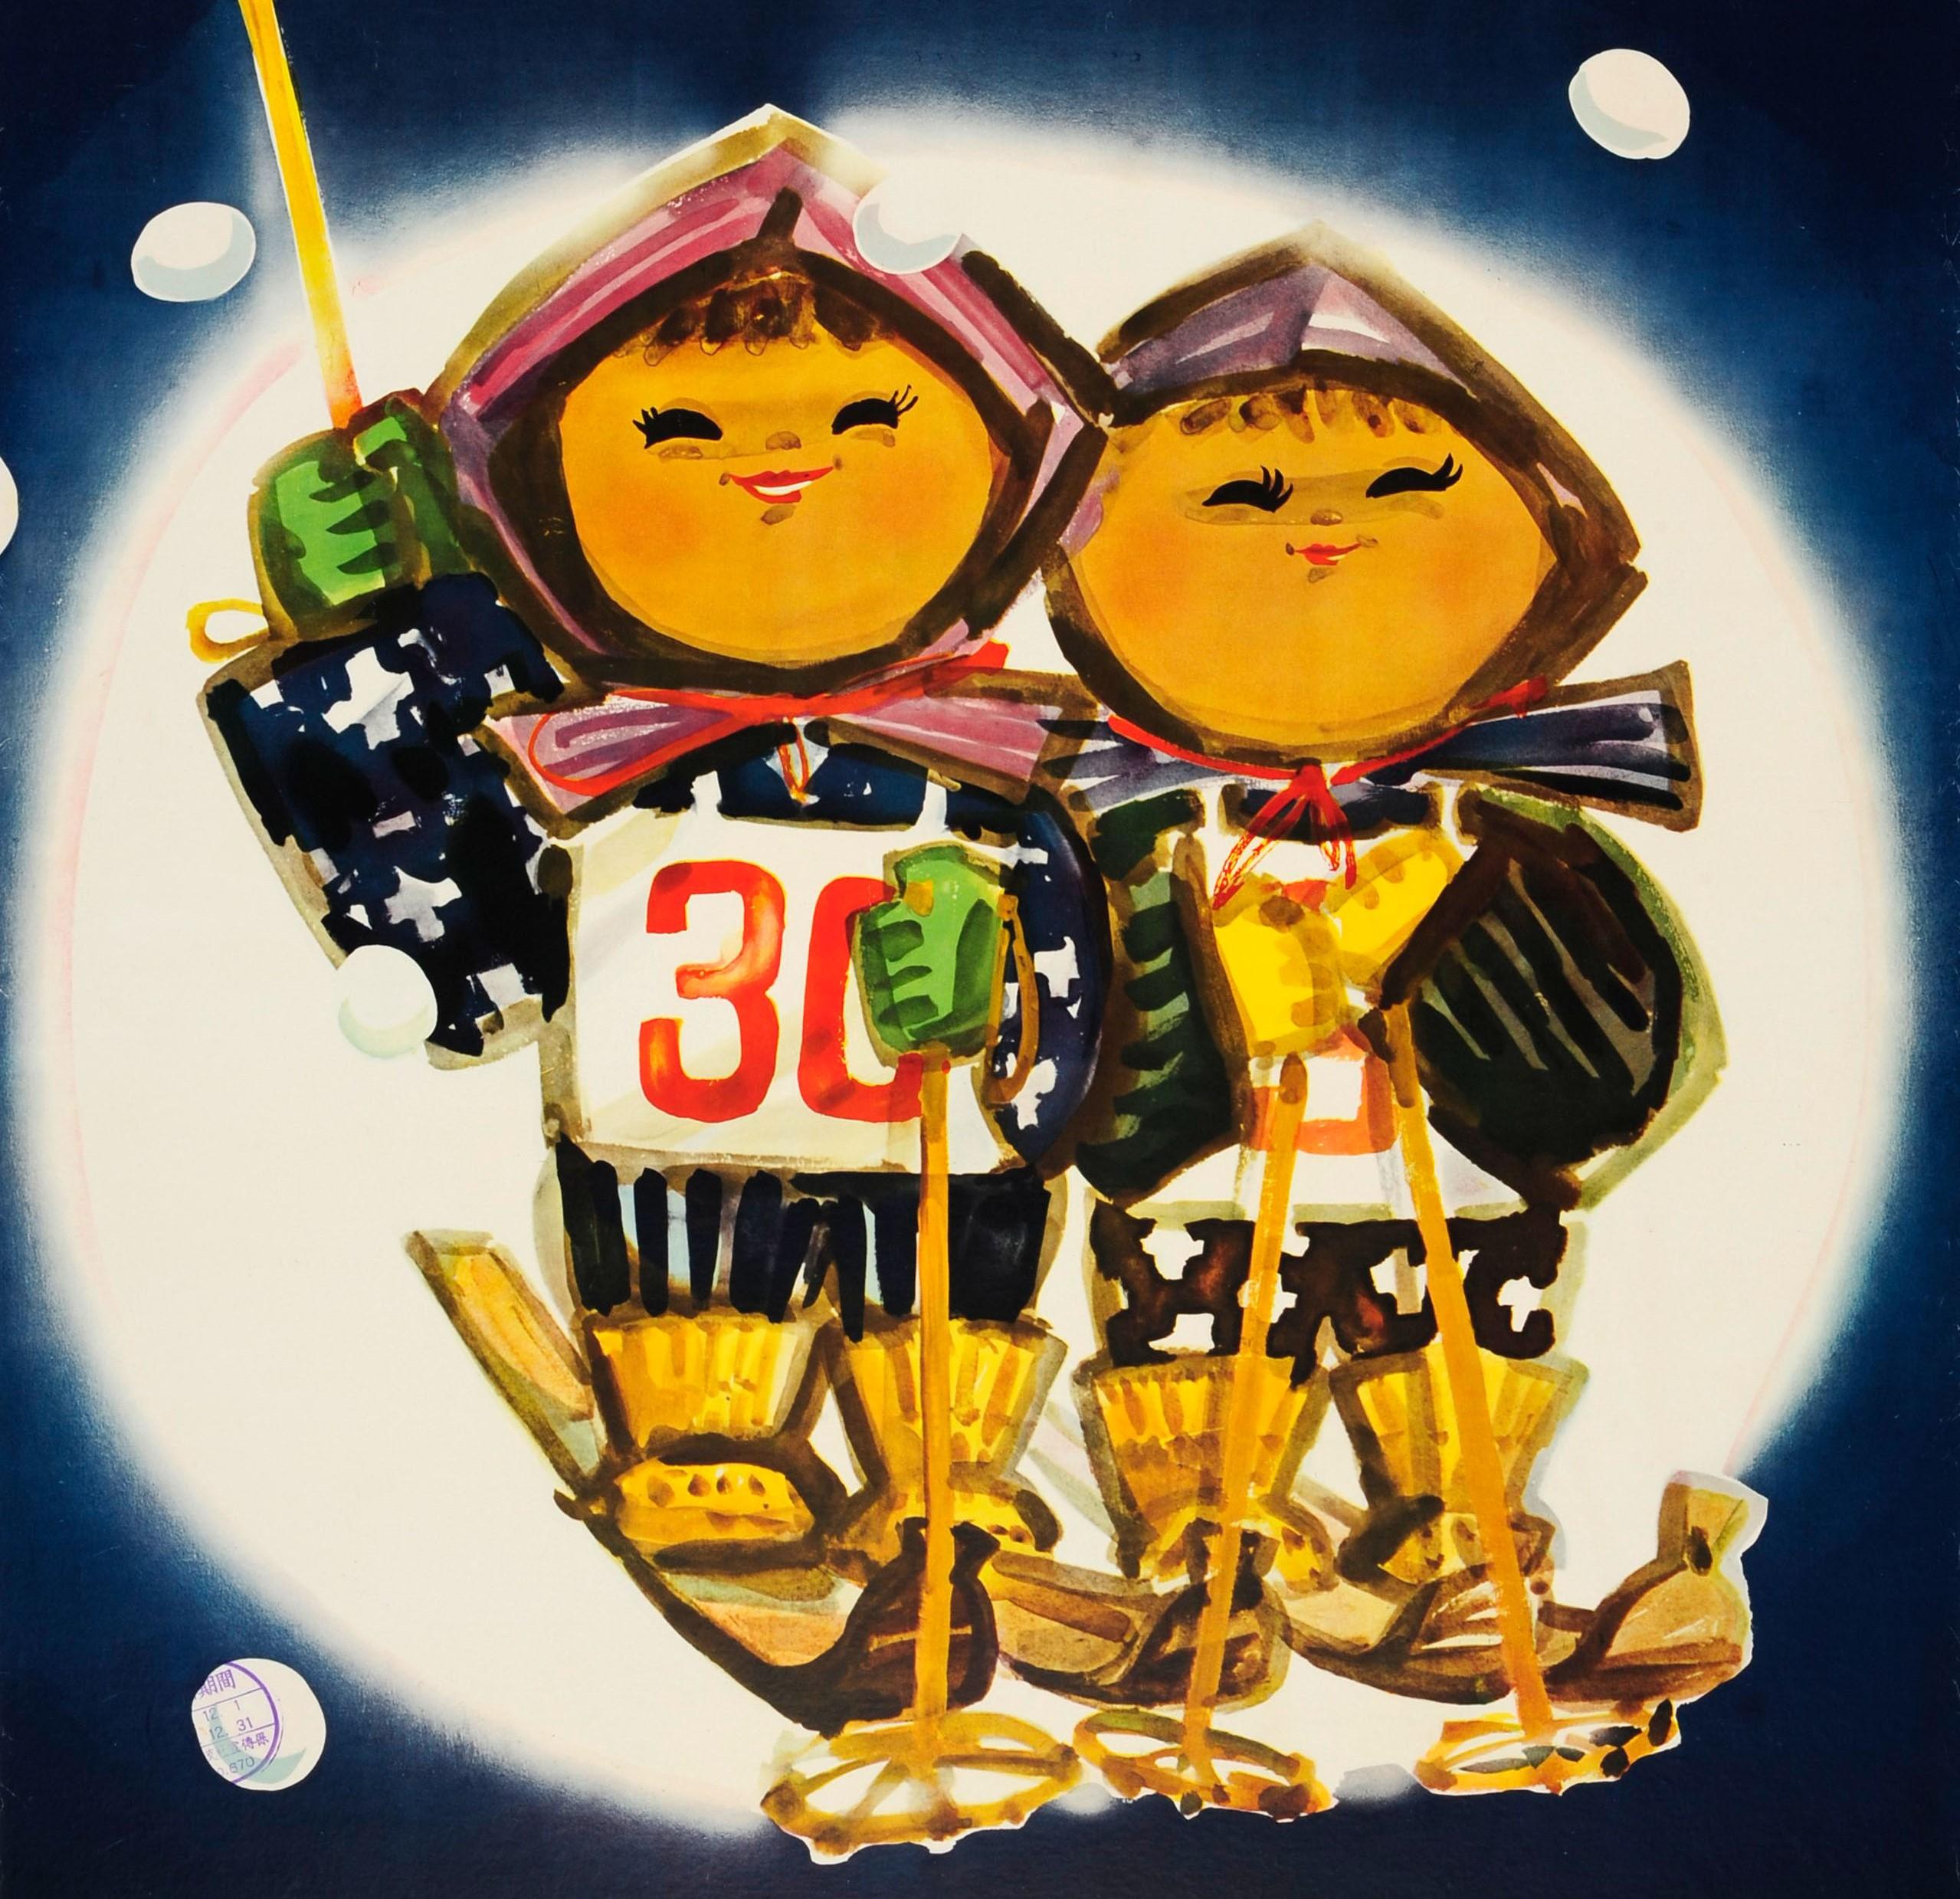 Original Vintage Japanese Ski Poster Featuring Smiling Children Skiers On Skis (Schwarz), Print, von Koichi